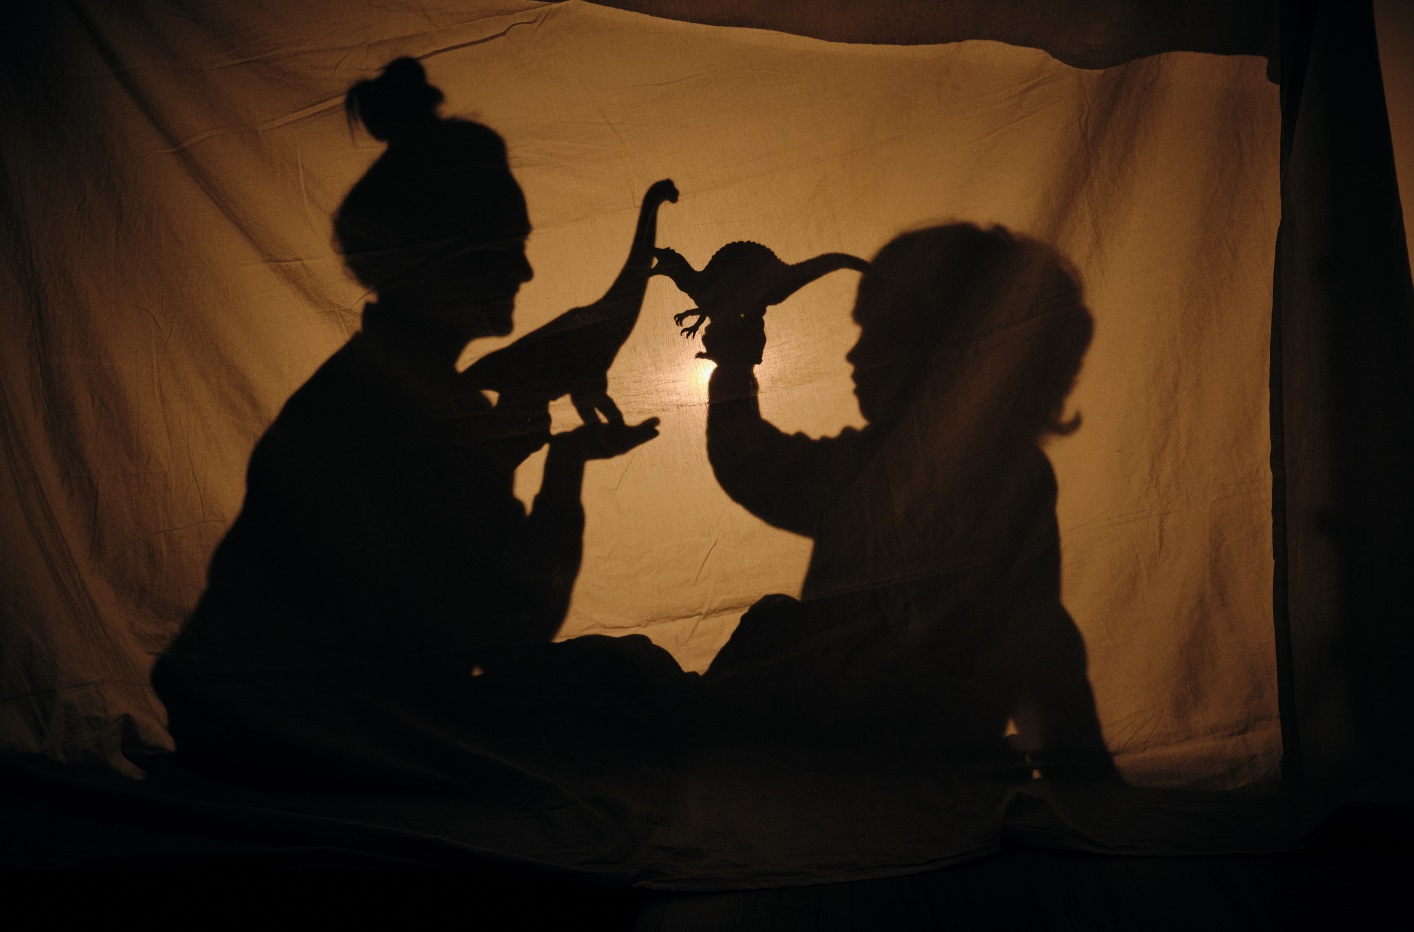 Teatro de sombras en el que aparecen las siluetas de una mujer y un niño.